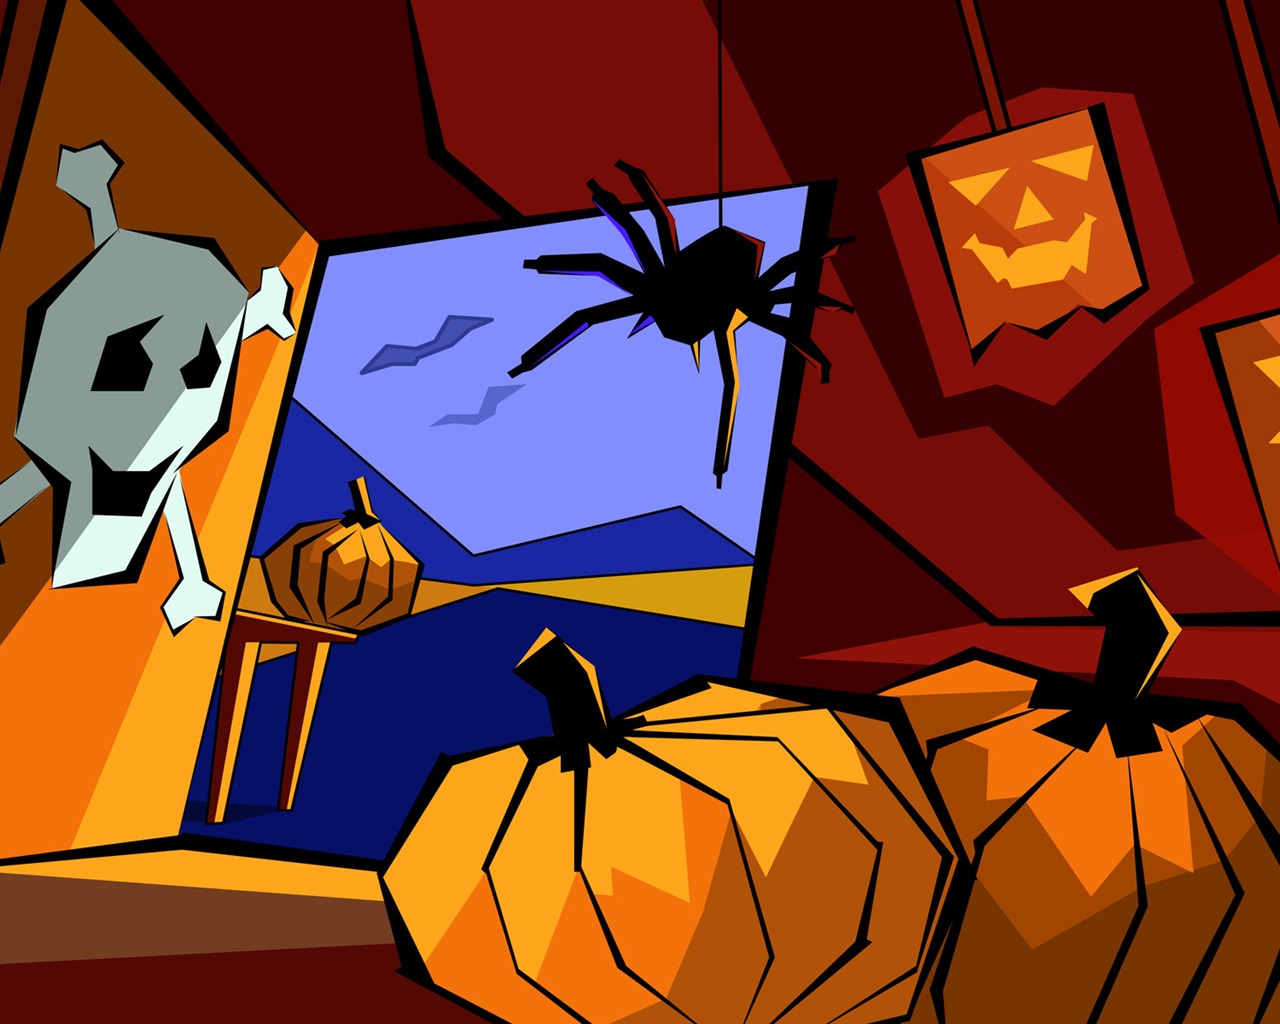 Fondos de Halloween temáticos (5) #15 - 1280x1024